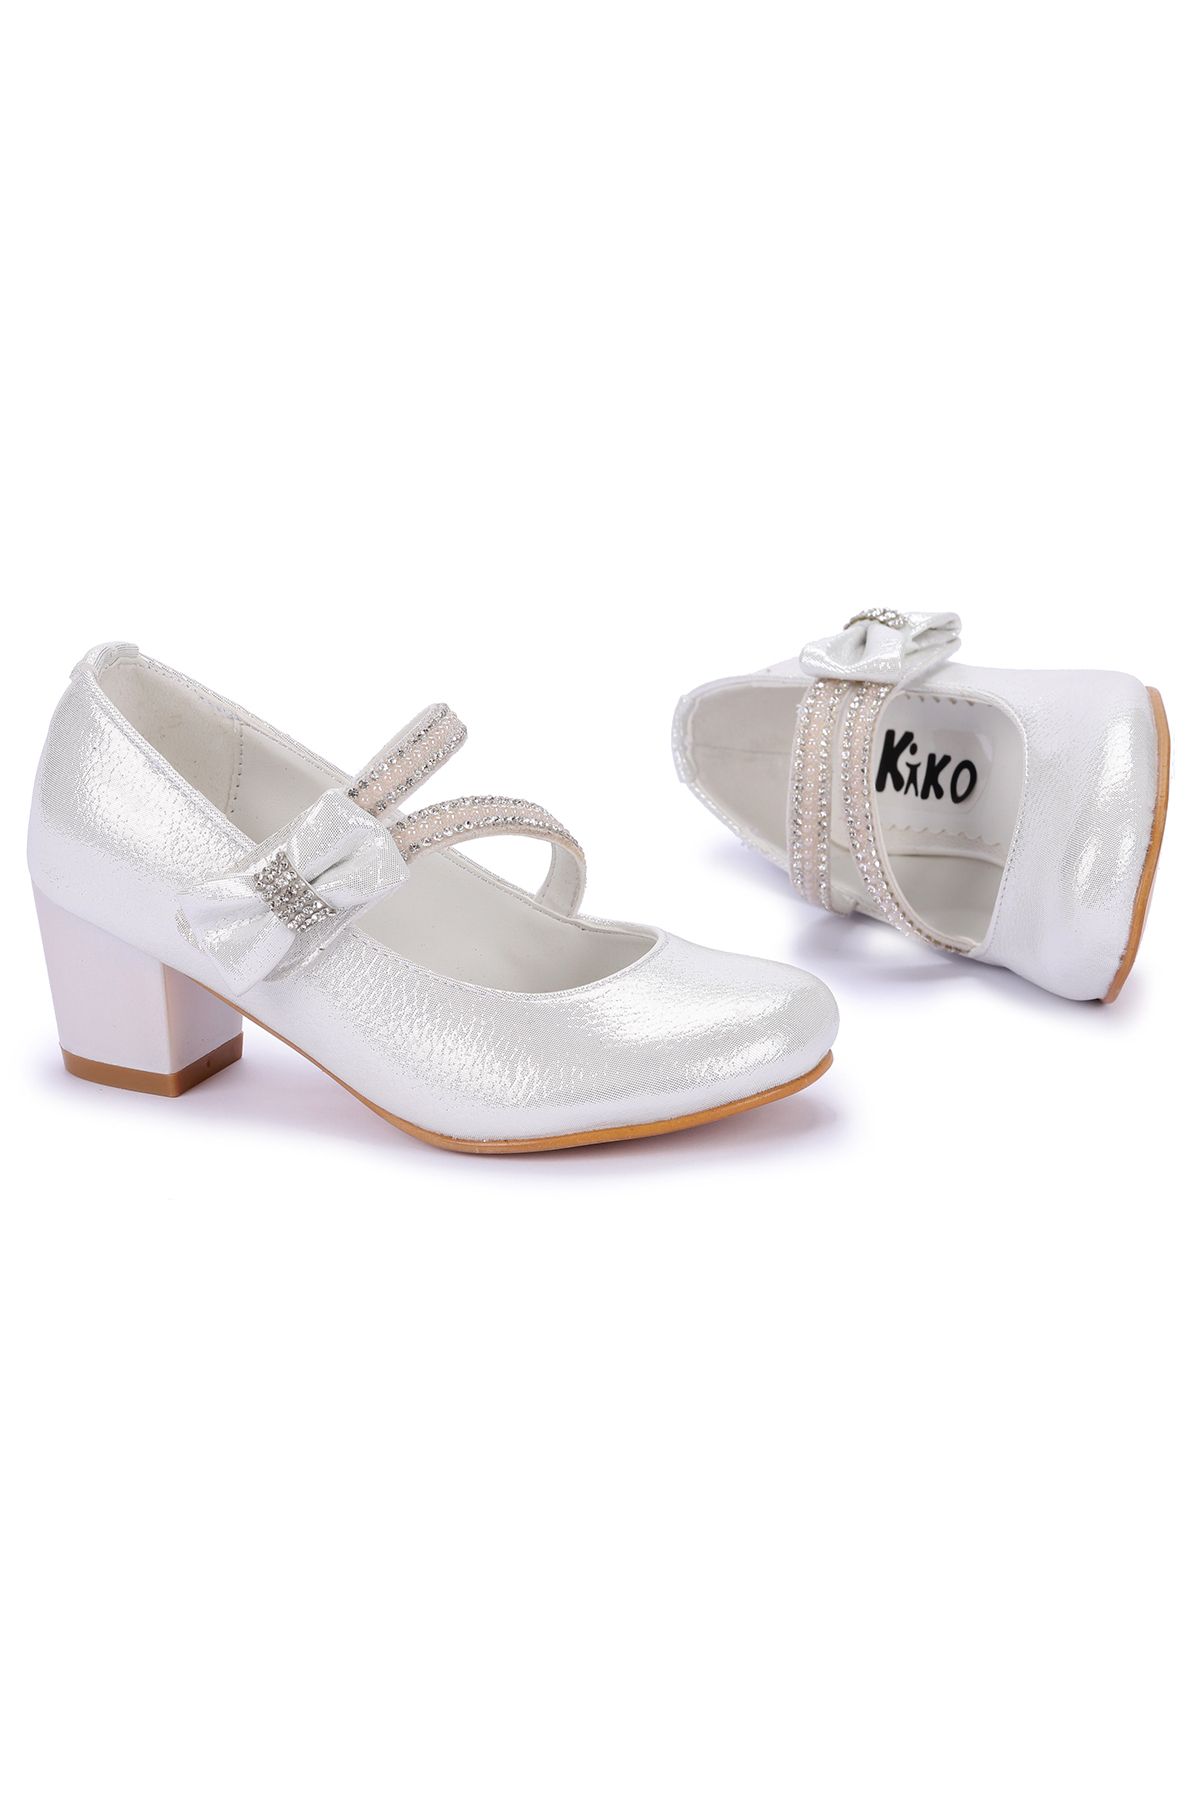 Kiko Kids 750 Vakko Günlük Kız Çocuk 4 Cm Topuklu Babet Ayakkabı